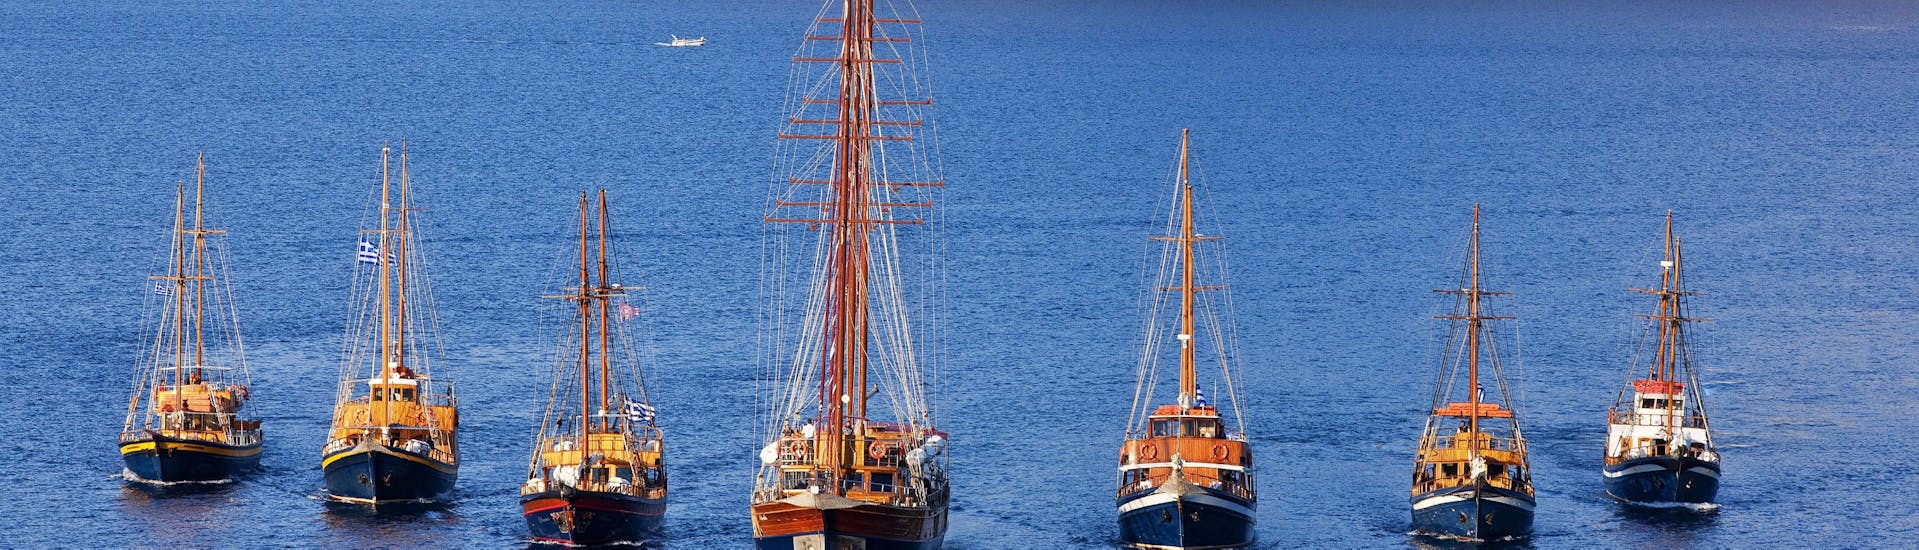 Vue des bateaux de Caldera's boats sur la mer depuis Santorin. 